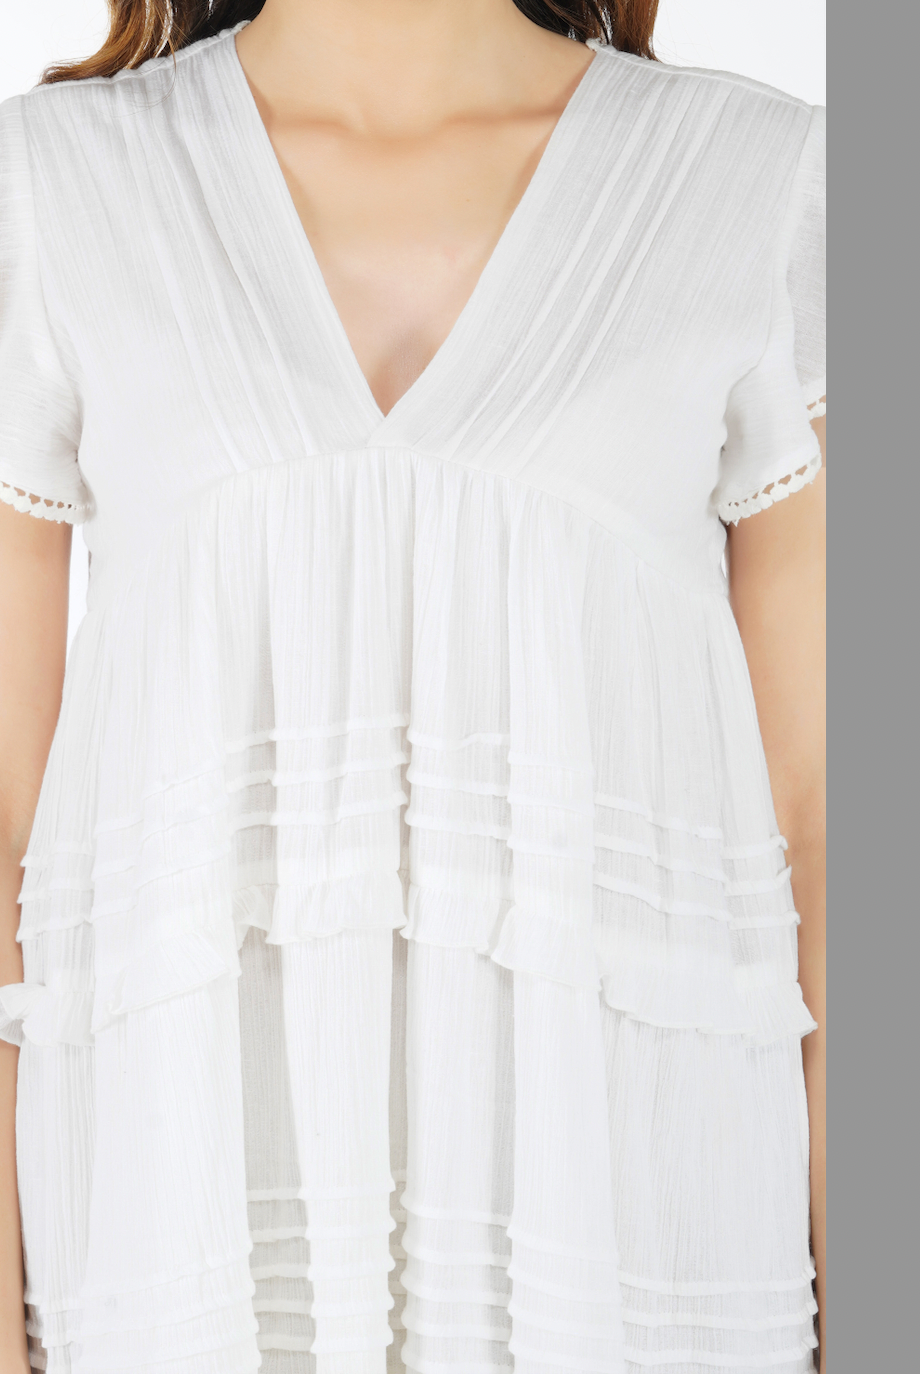 Nantucket White Short Dress